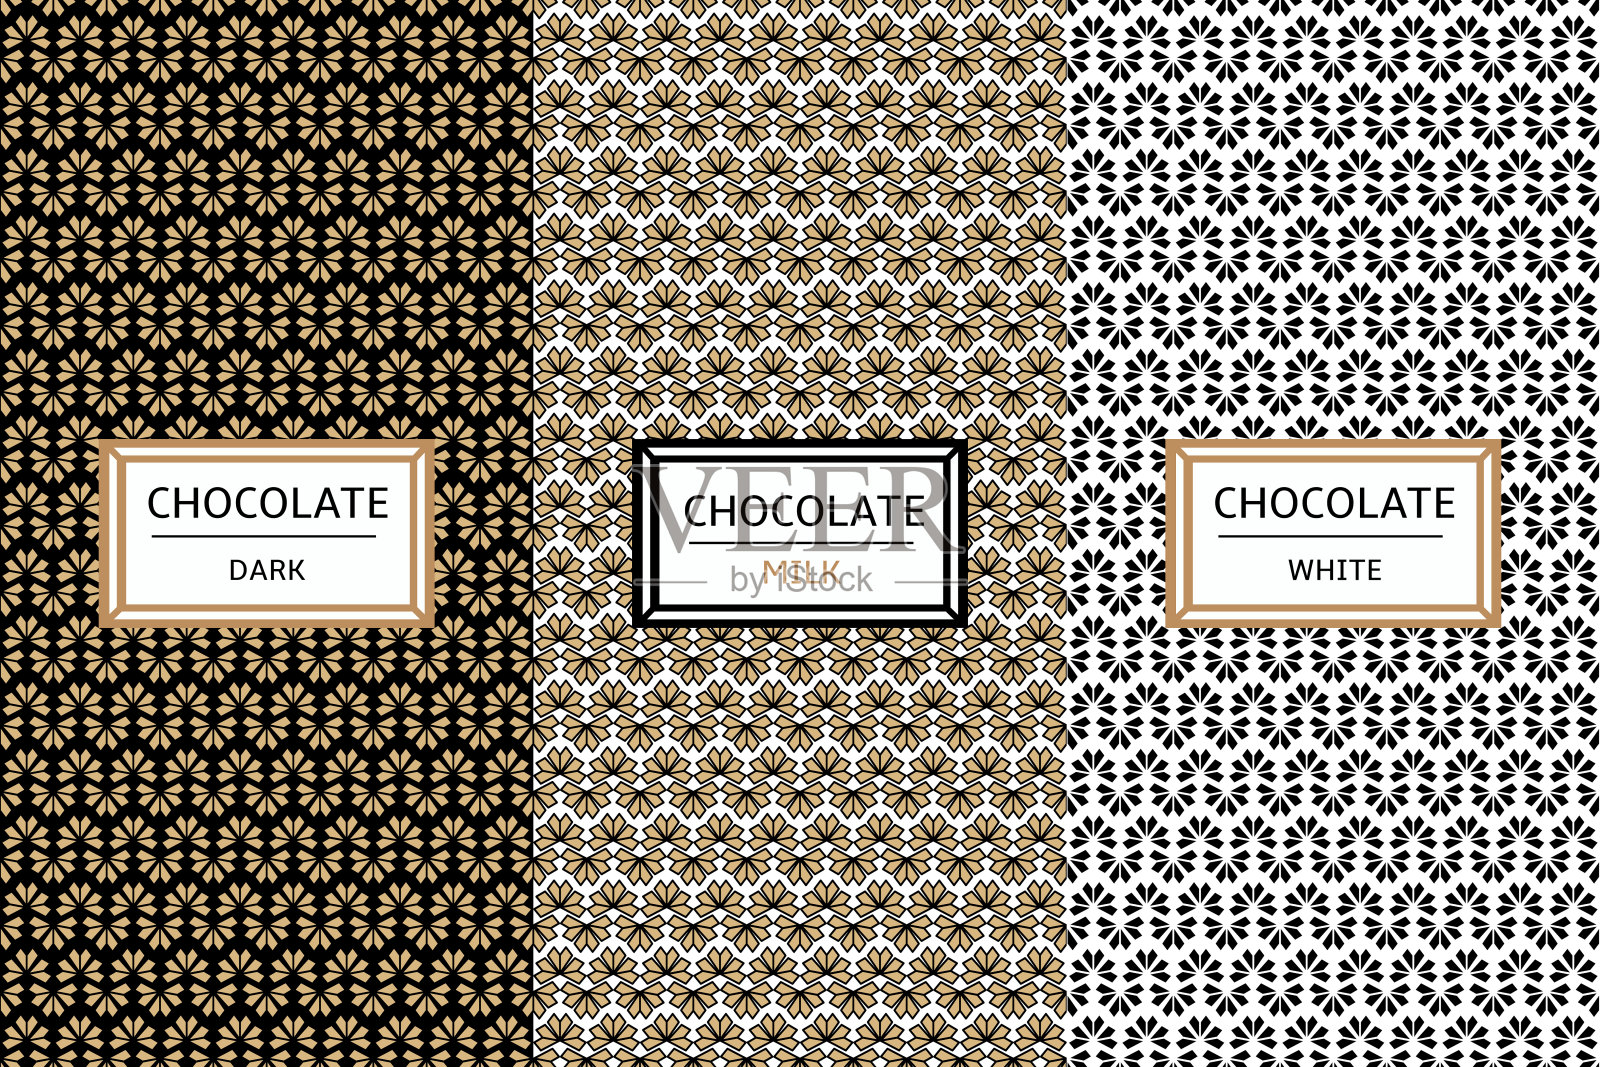 巧克力包装设计套装插画图片素材